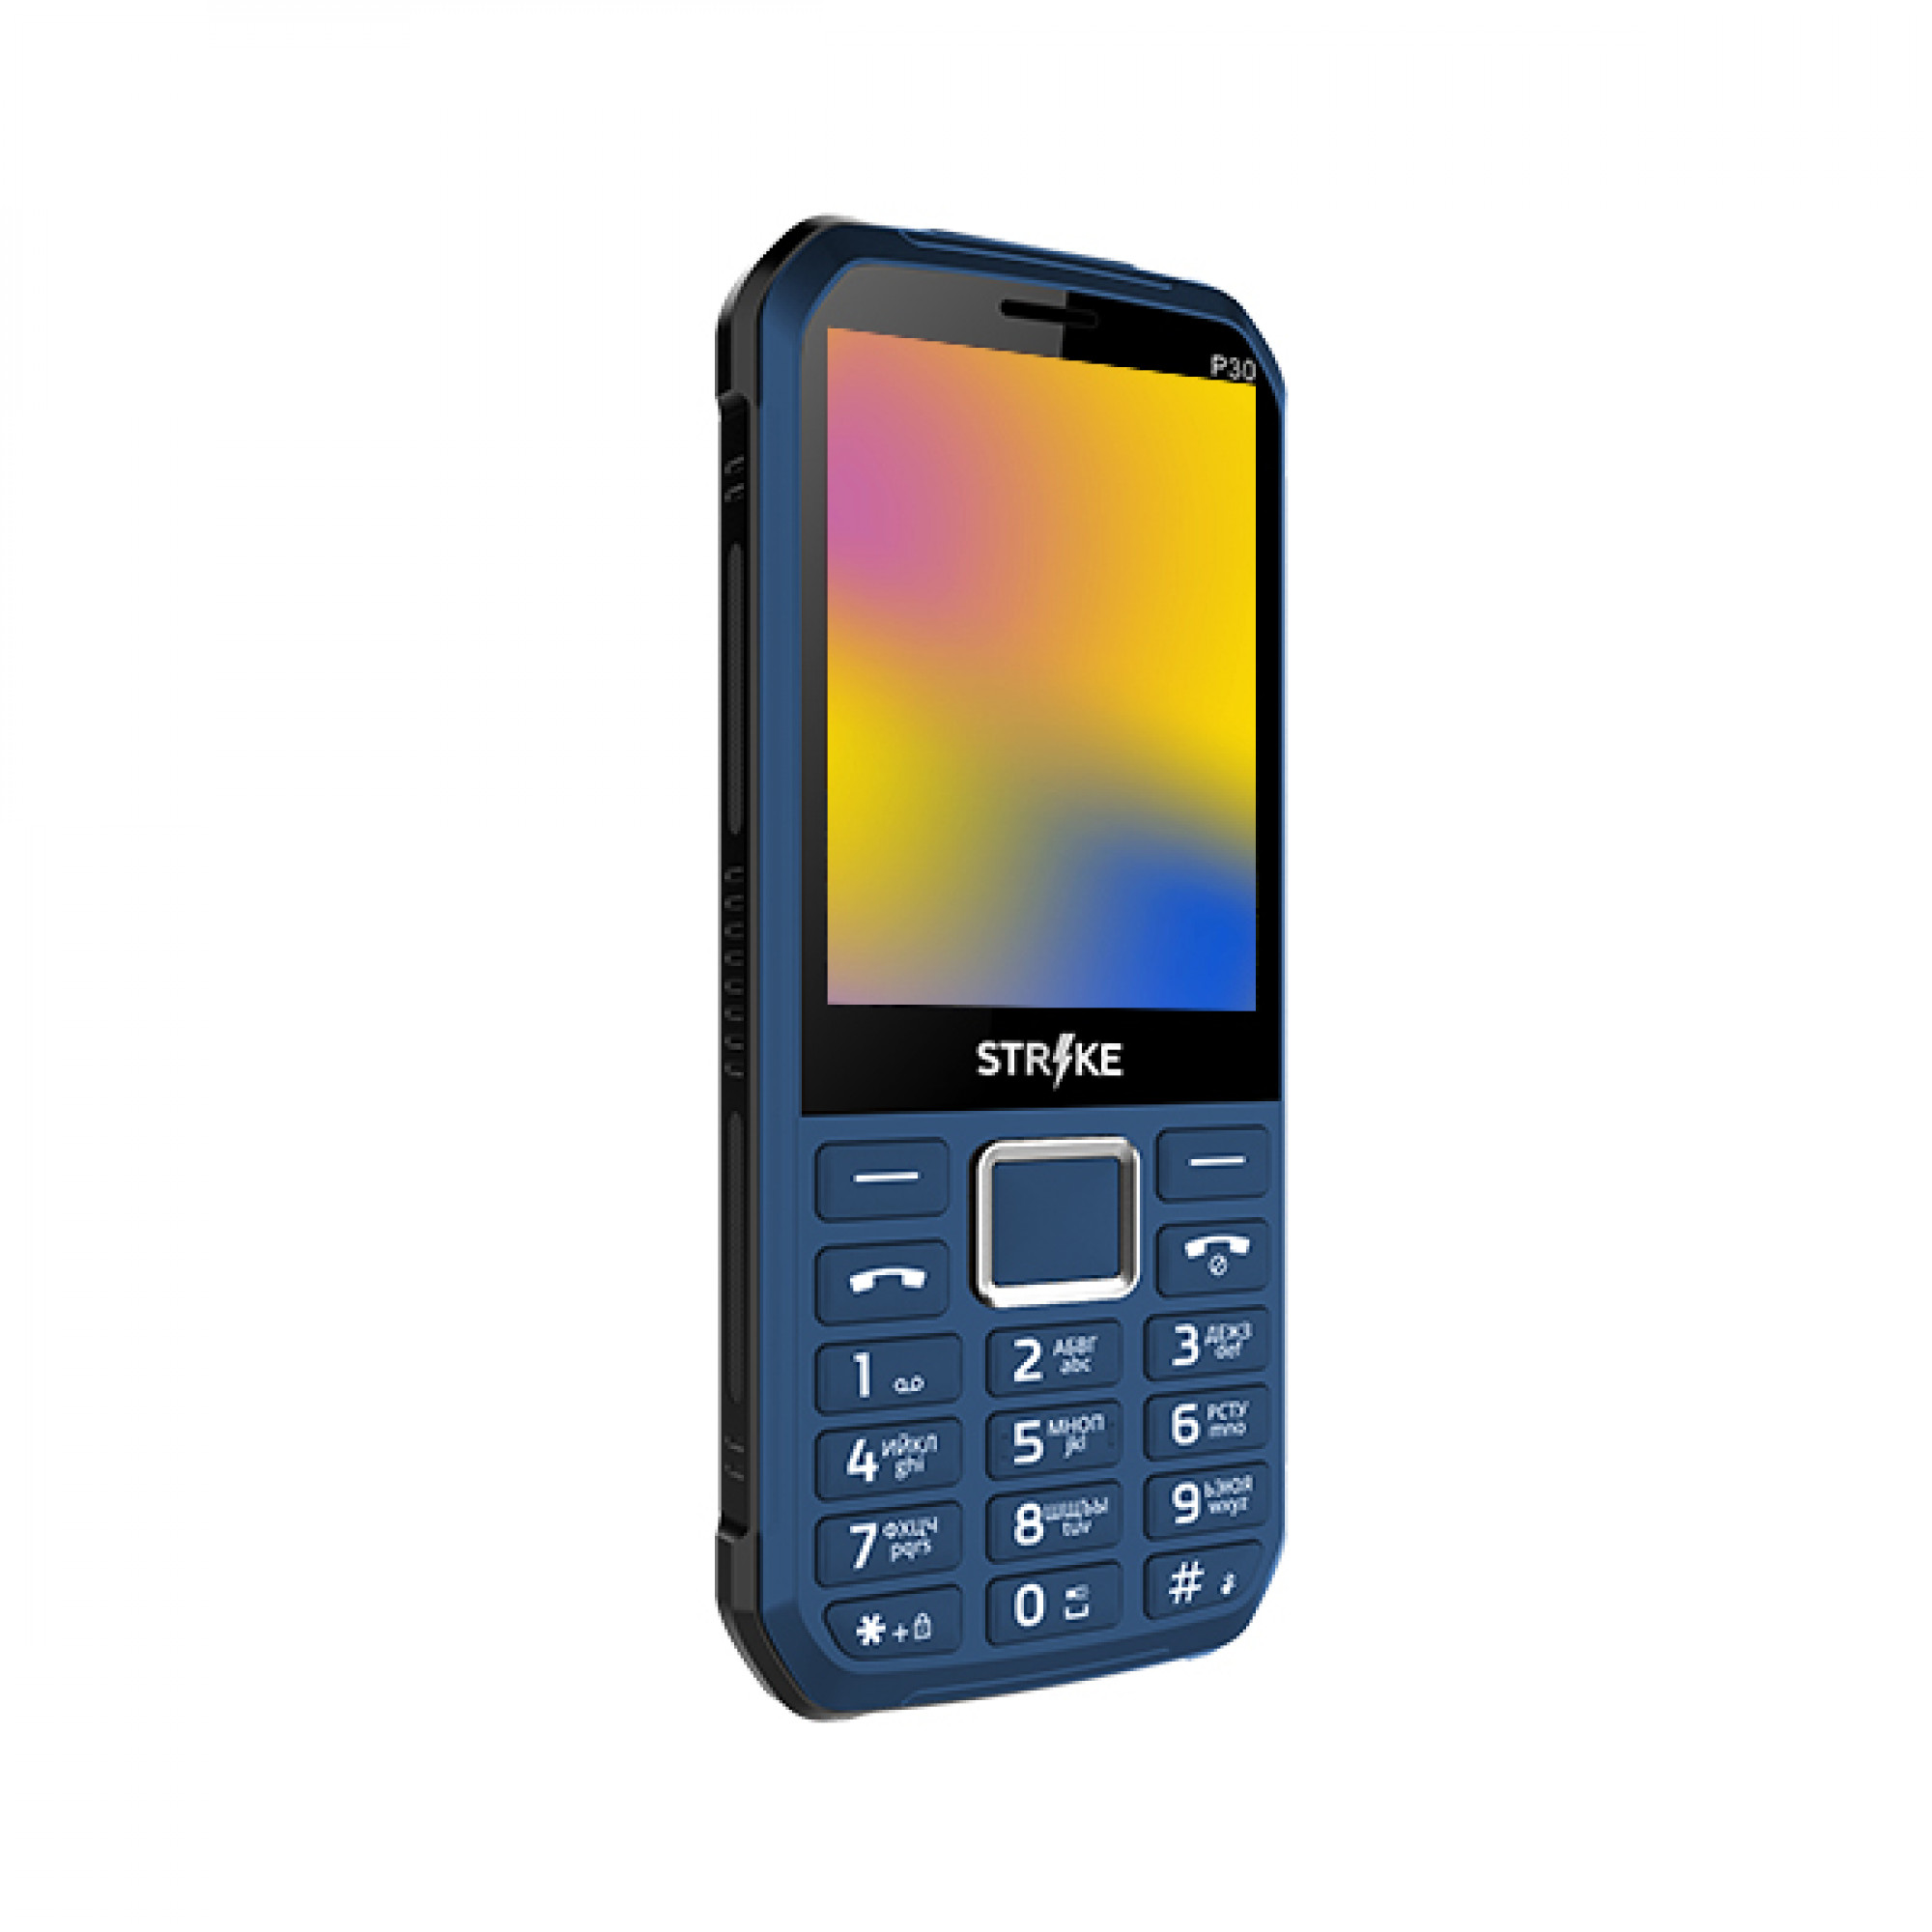 Мобильный телефон Strike P30 (синий)